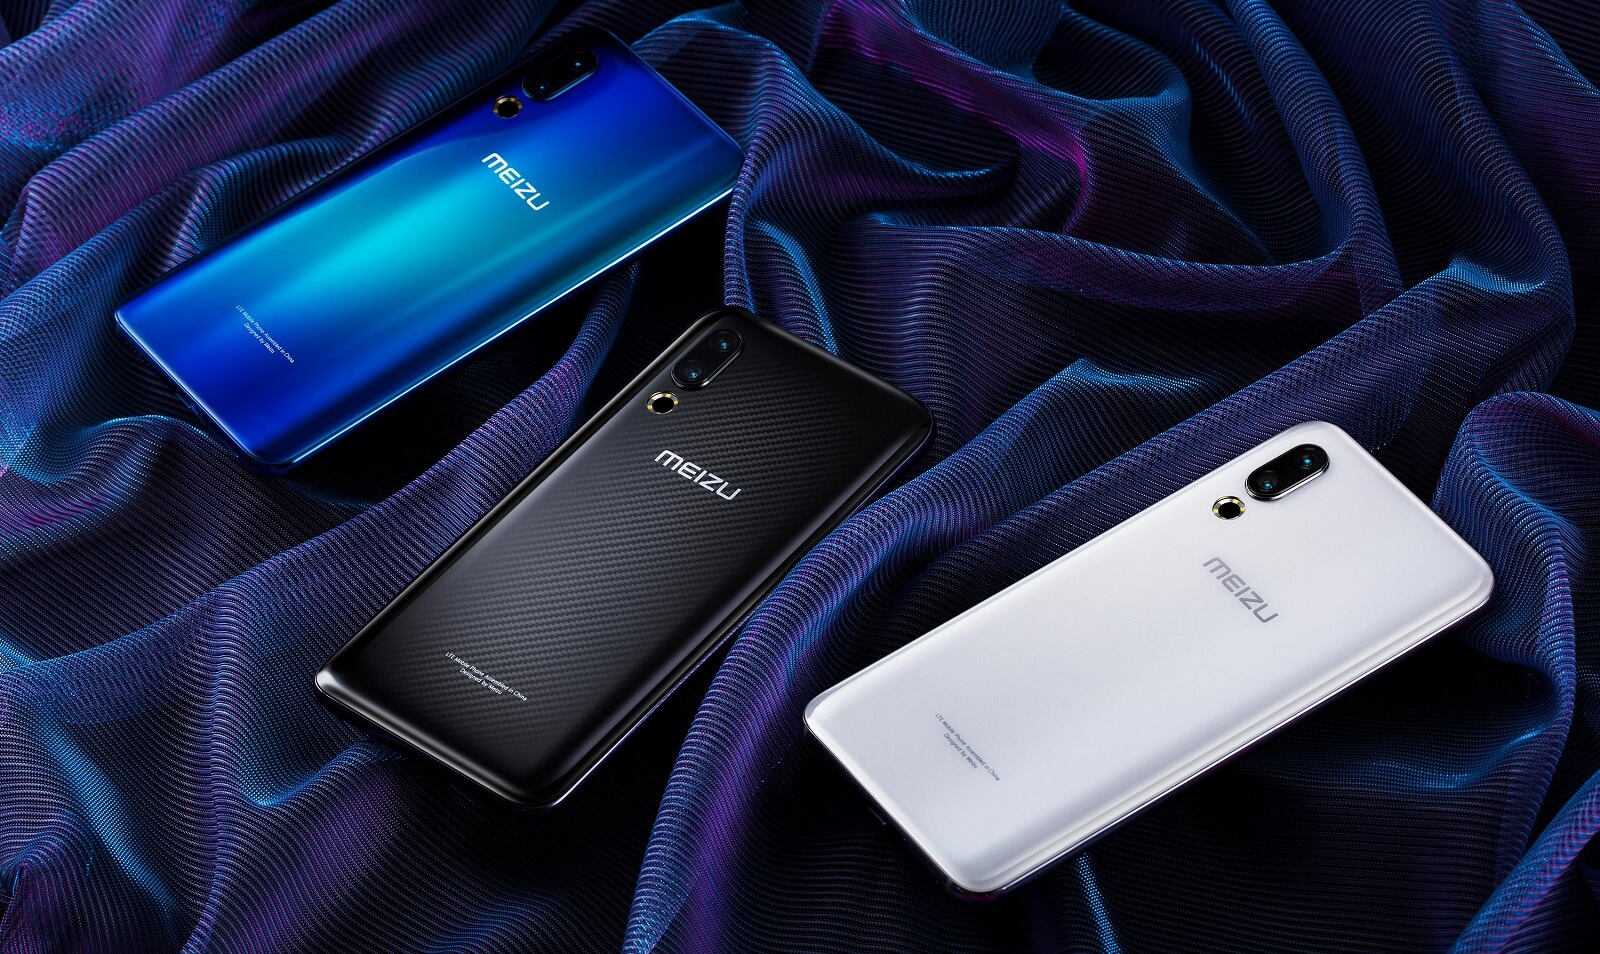 Meizu наступного року презентує щонайменше 4 смартфони з підтримкою 5G